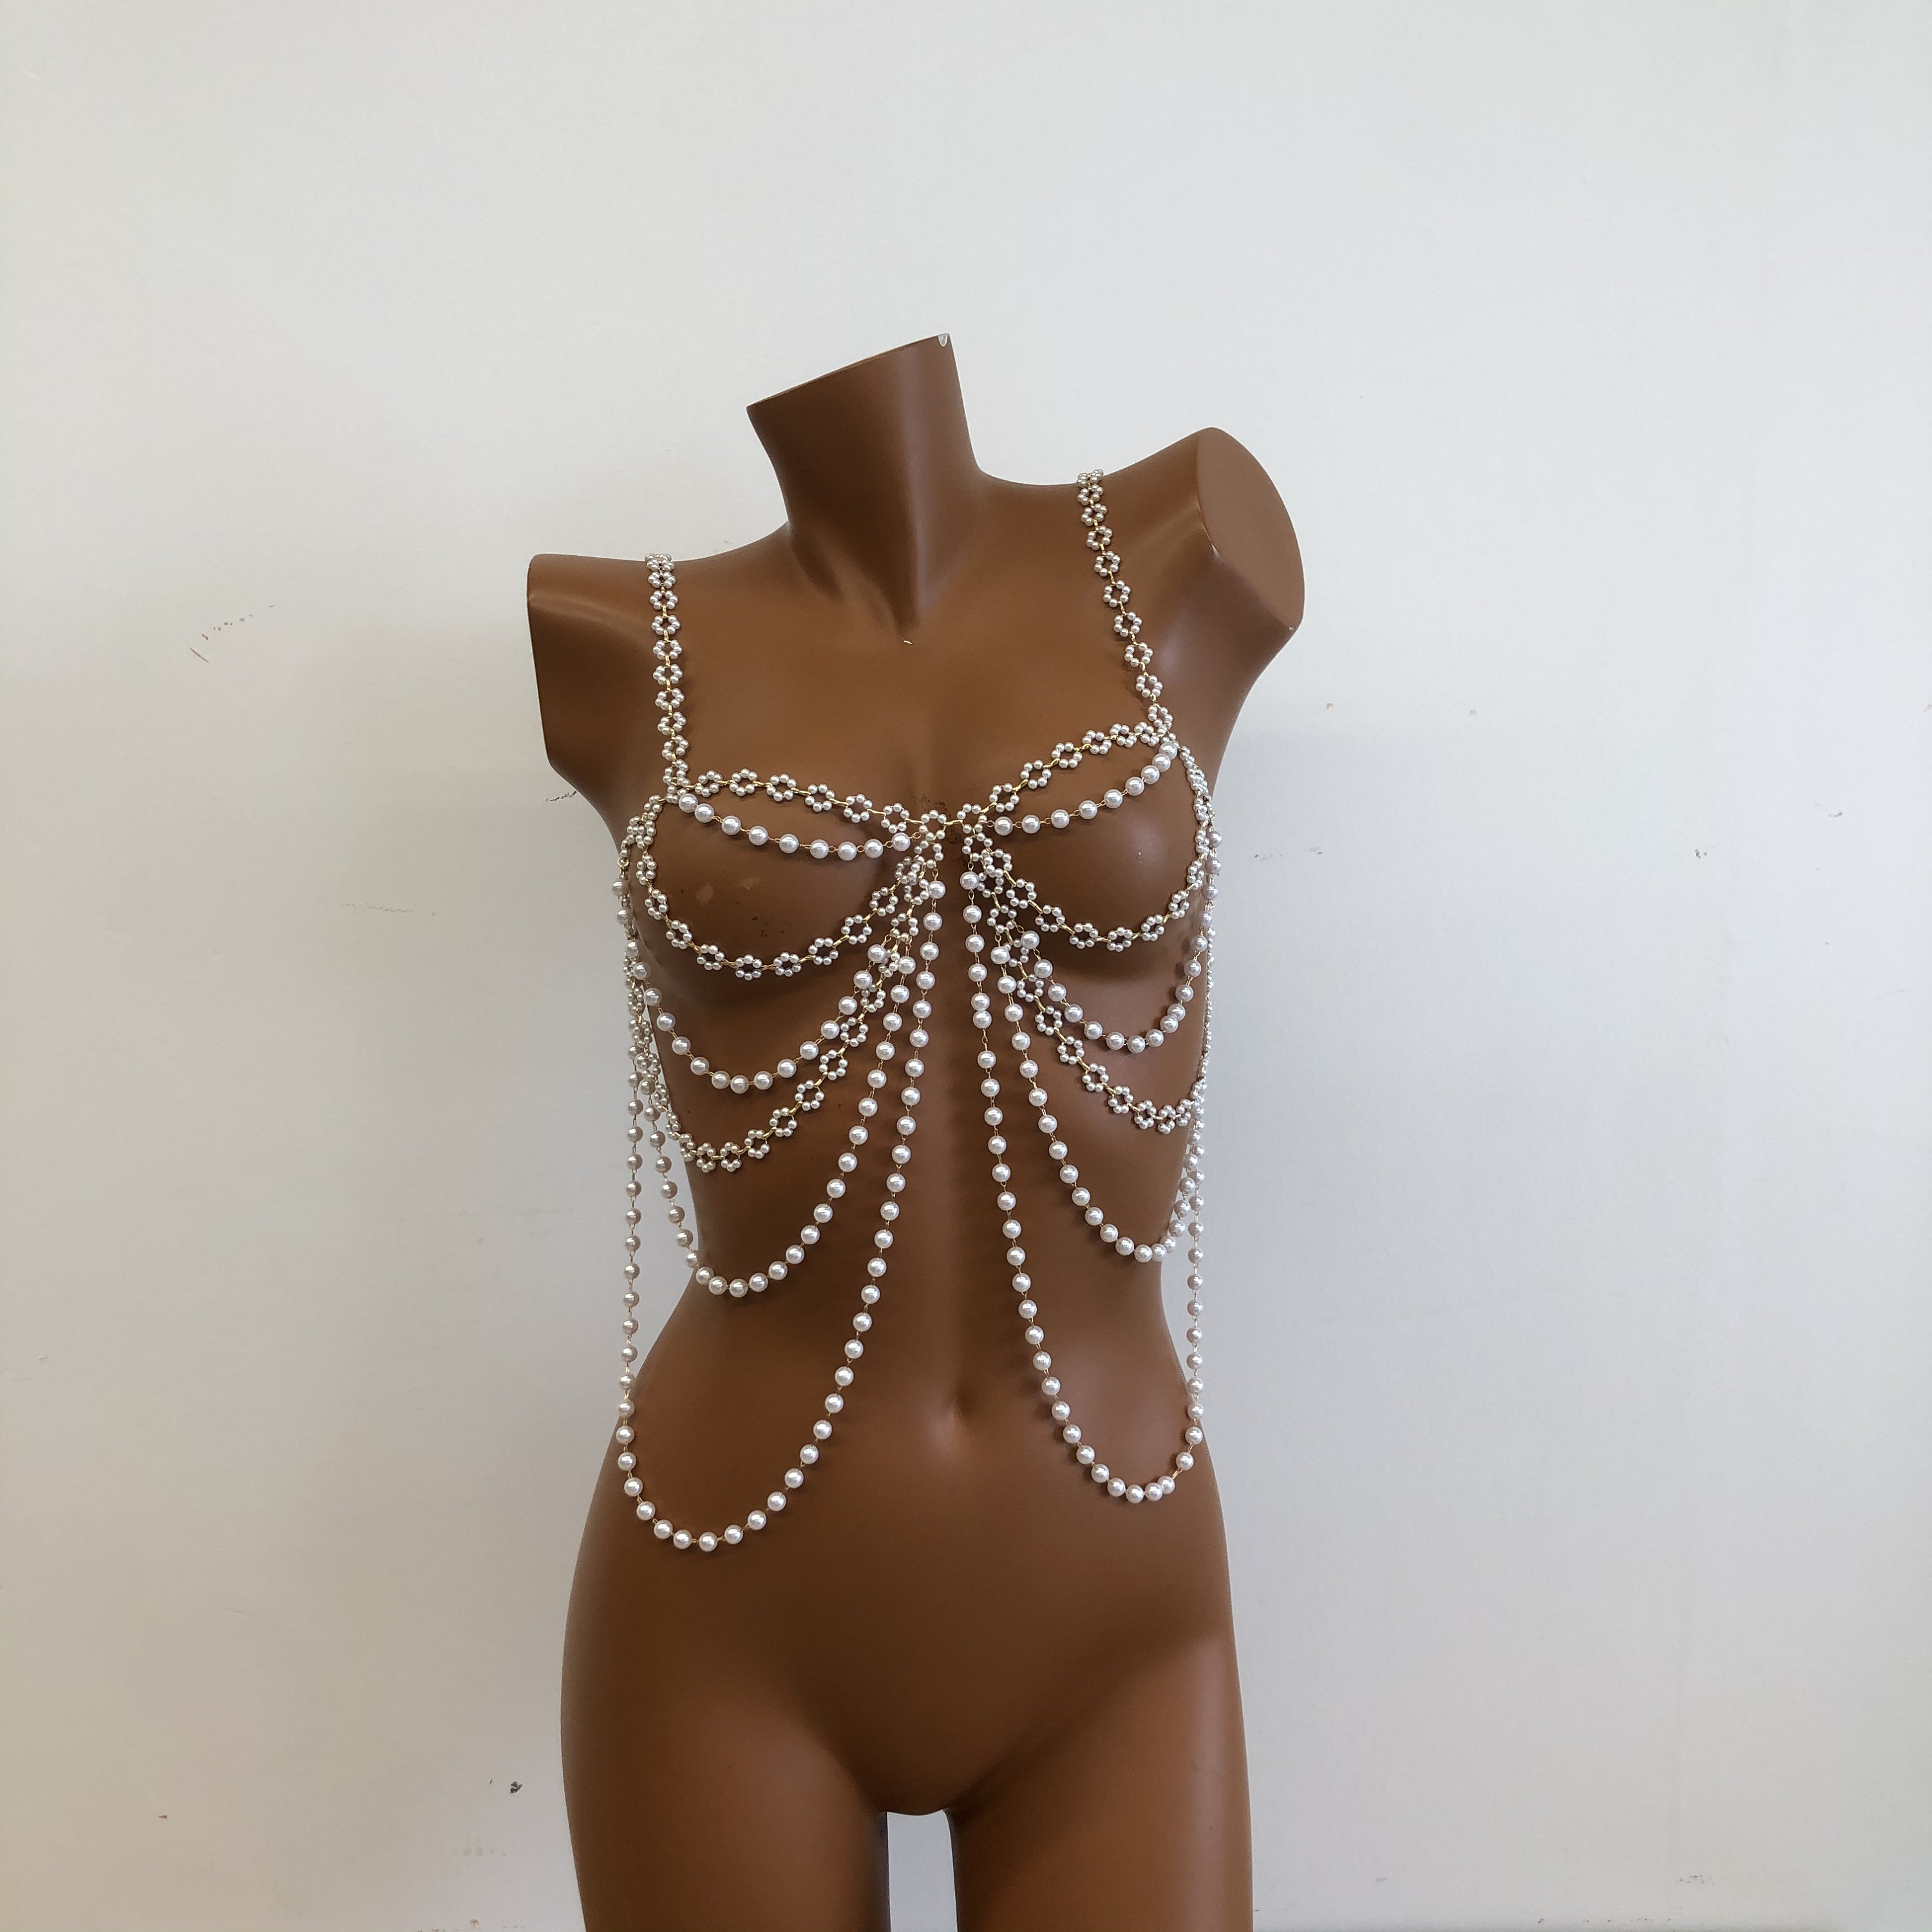 Buy Shionreiy Pearl Body Chain Bra, Fashion Shoulder Necklaces Bra